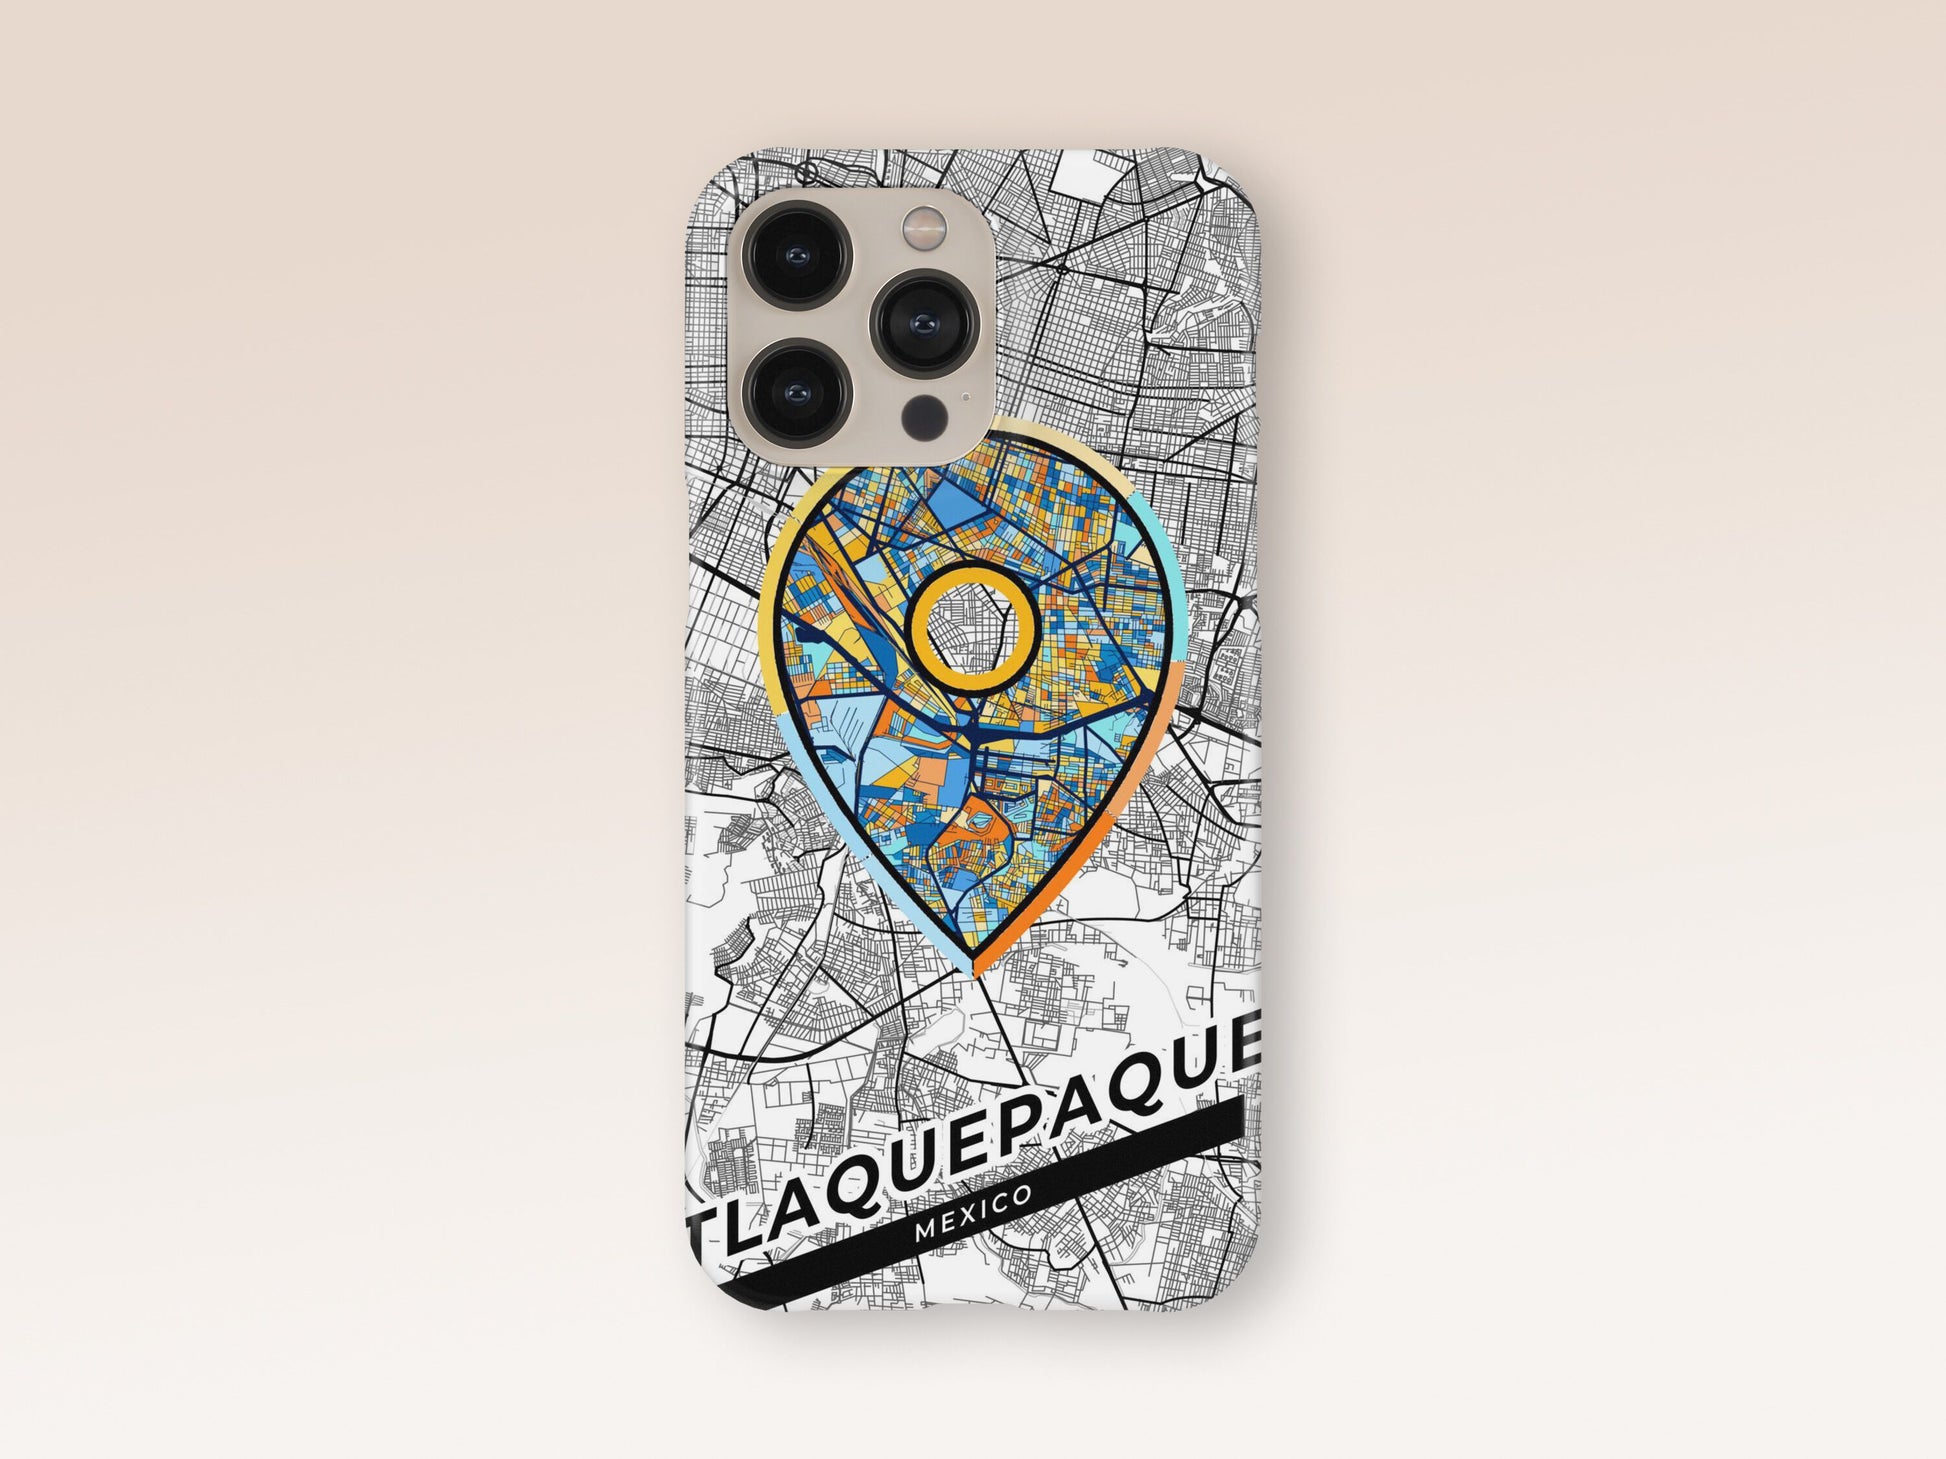 Tlaquepaque Mexico slim phone case with colorful icon 1